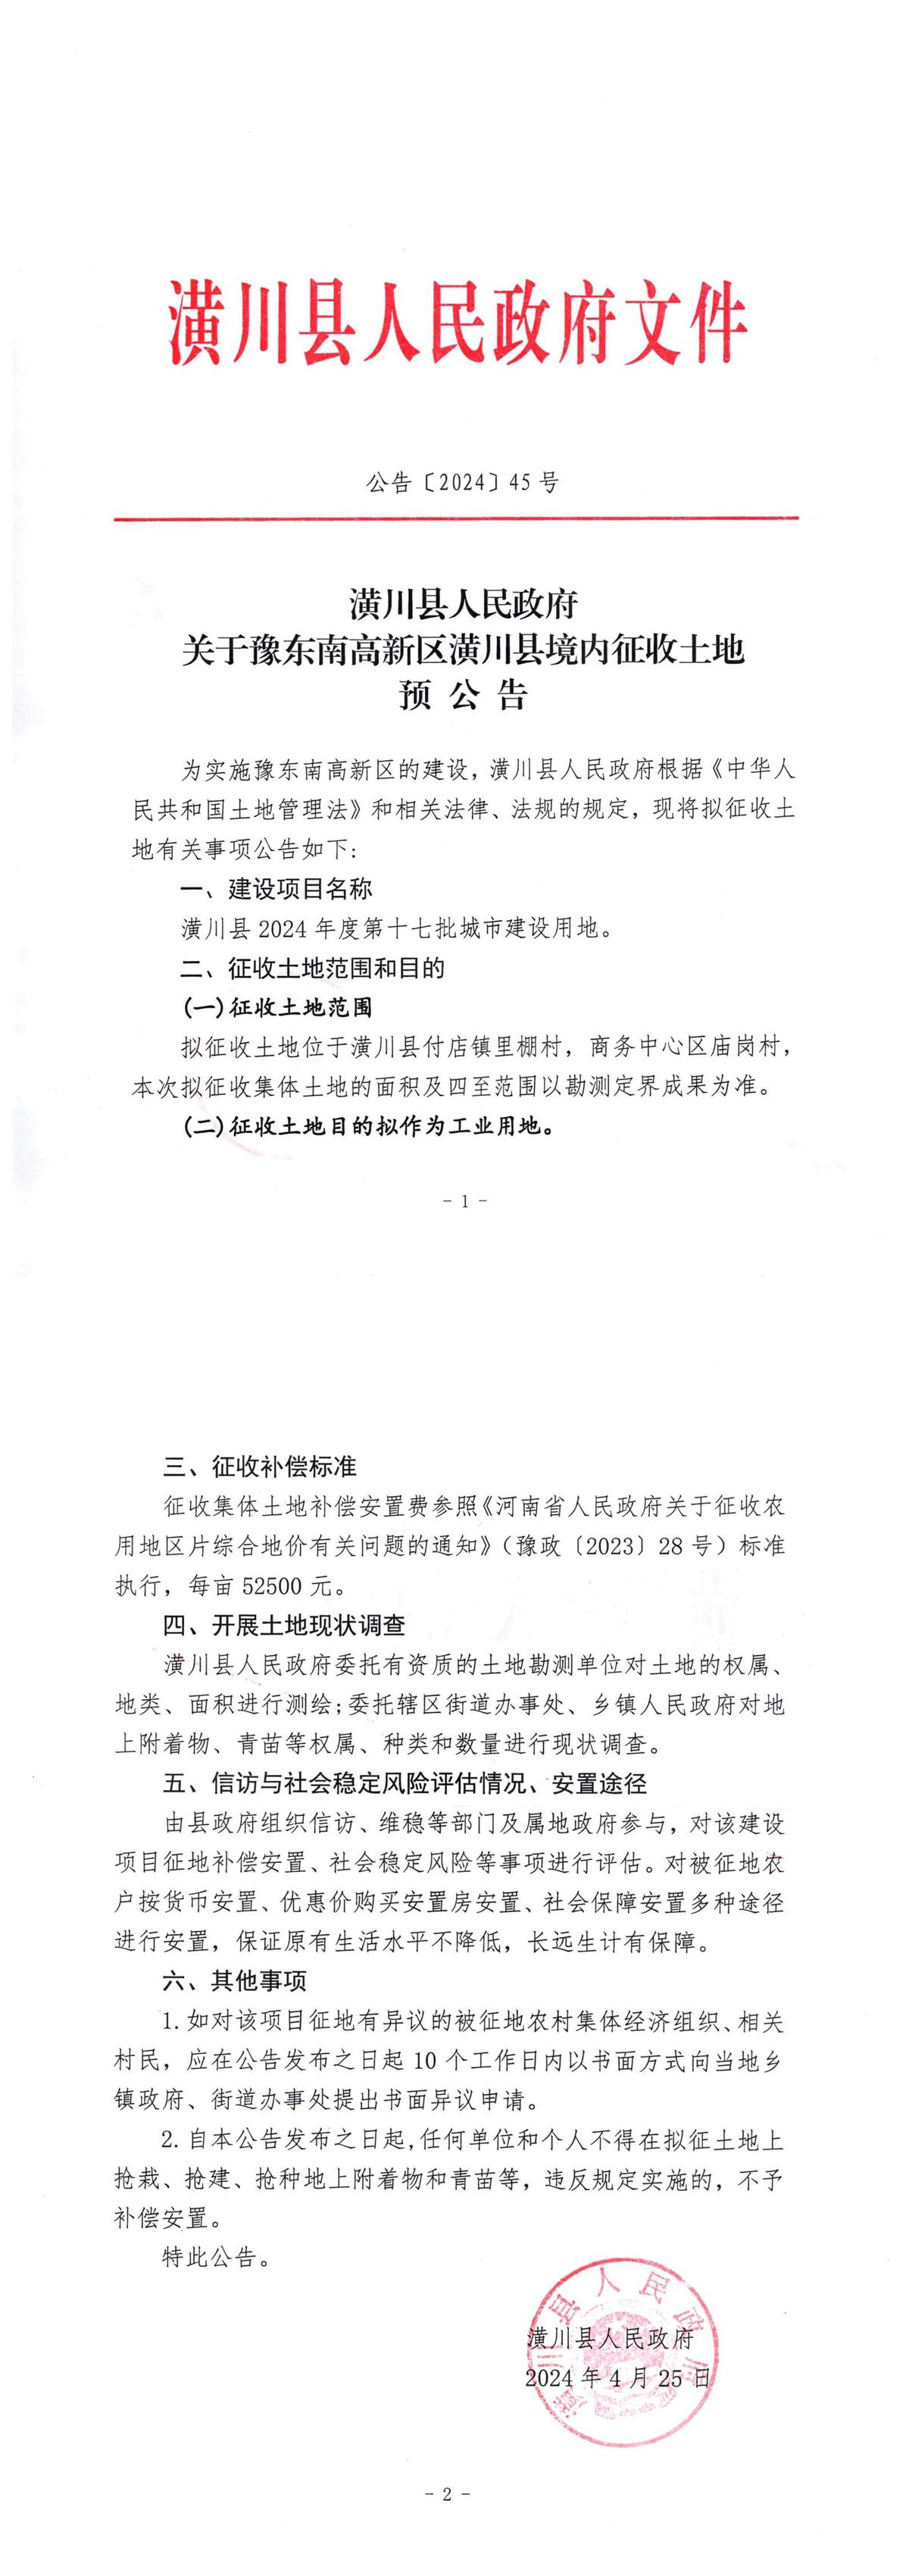 公告〔2024〕45号关于豫东南高新区潢川县境内征收土地预公告